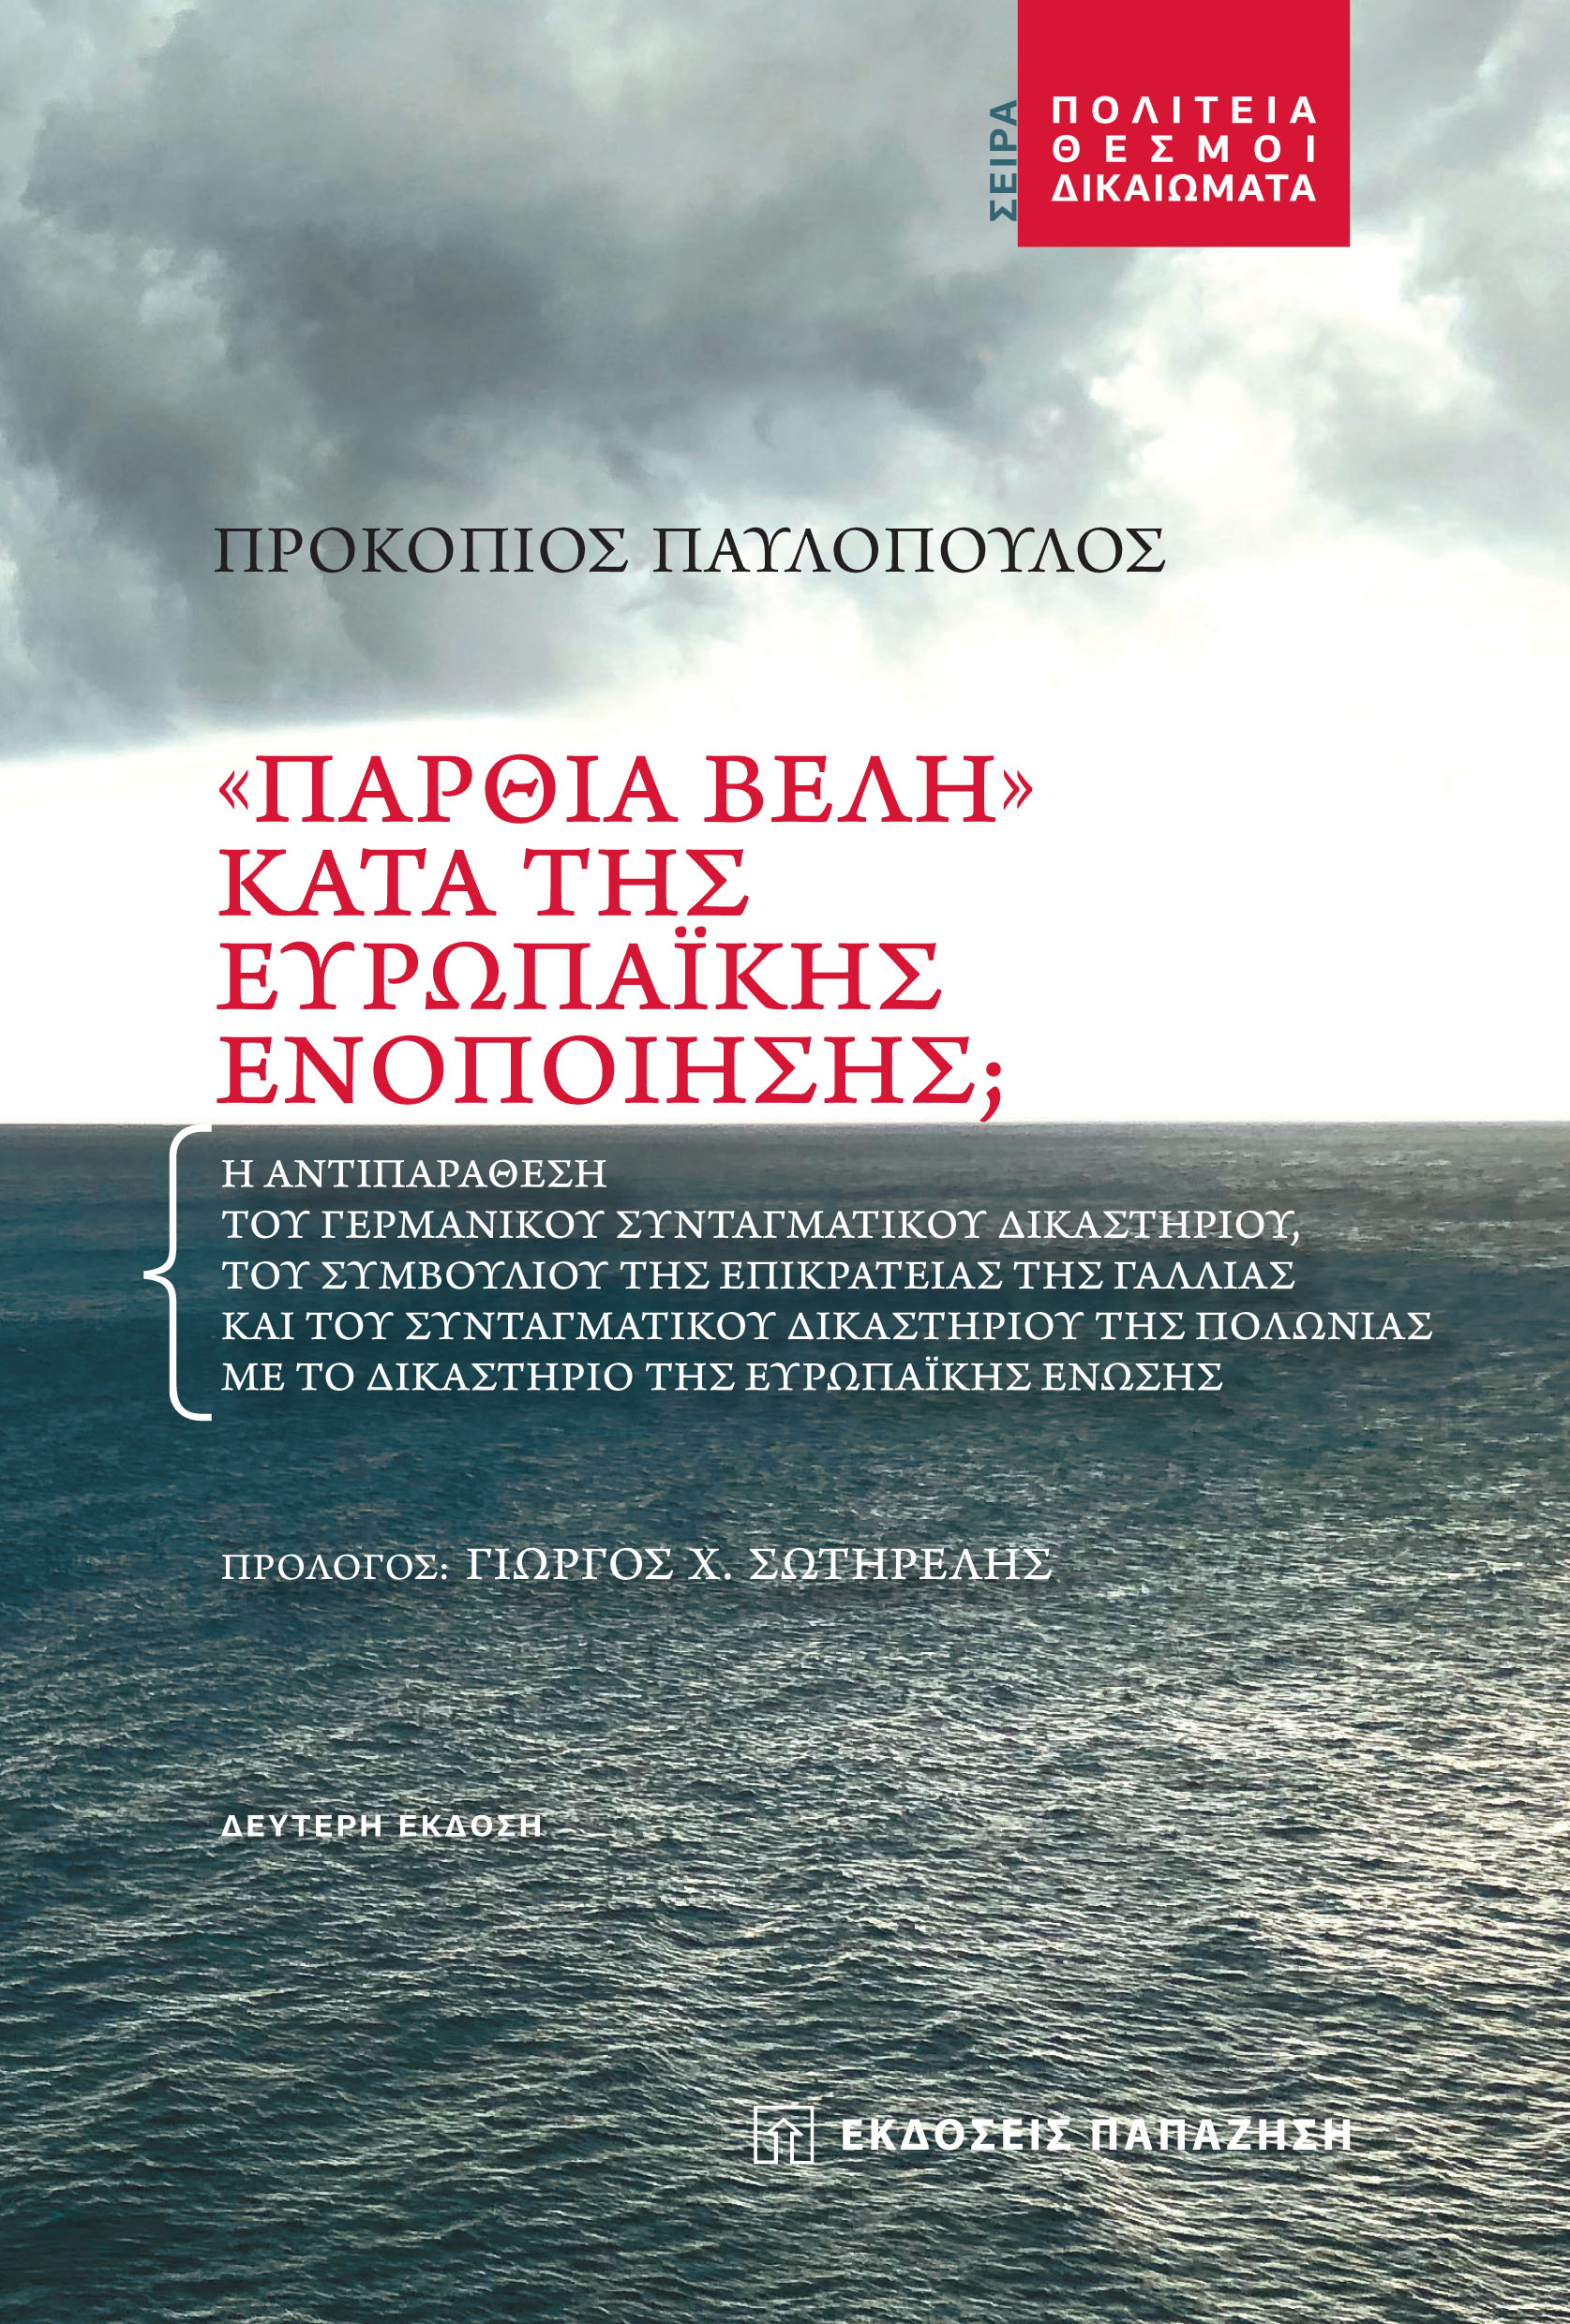 Π.Παυλόπουλος: 2η, επαυξημένη, έκδοση του βιβλίου του με τίτλο: «“Πάρθια Βέλη” κατά της Ευρωπαϊκής Ενοποίησης;»